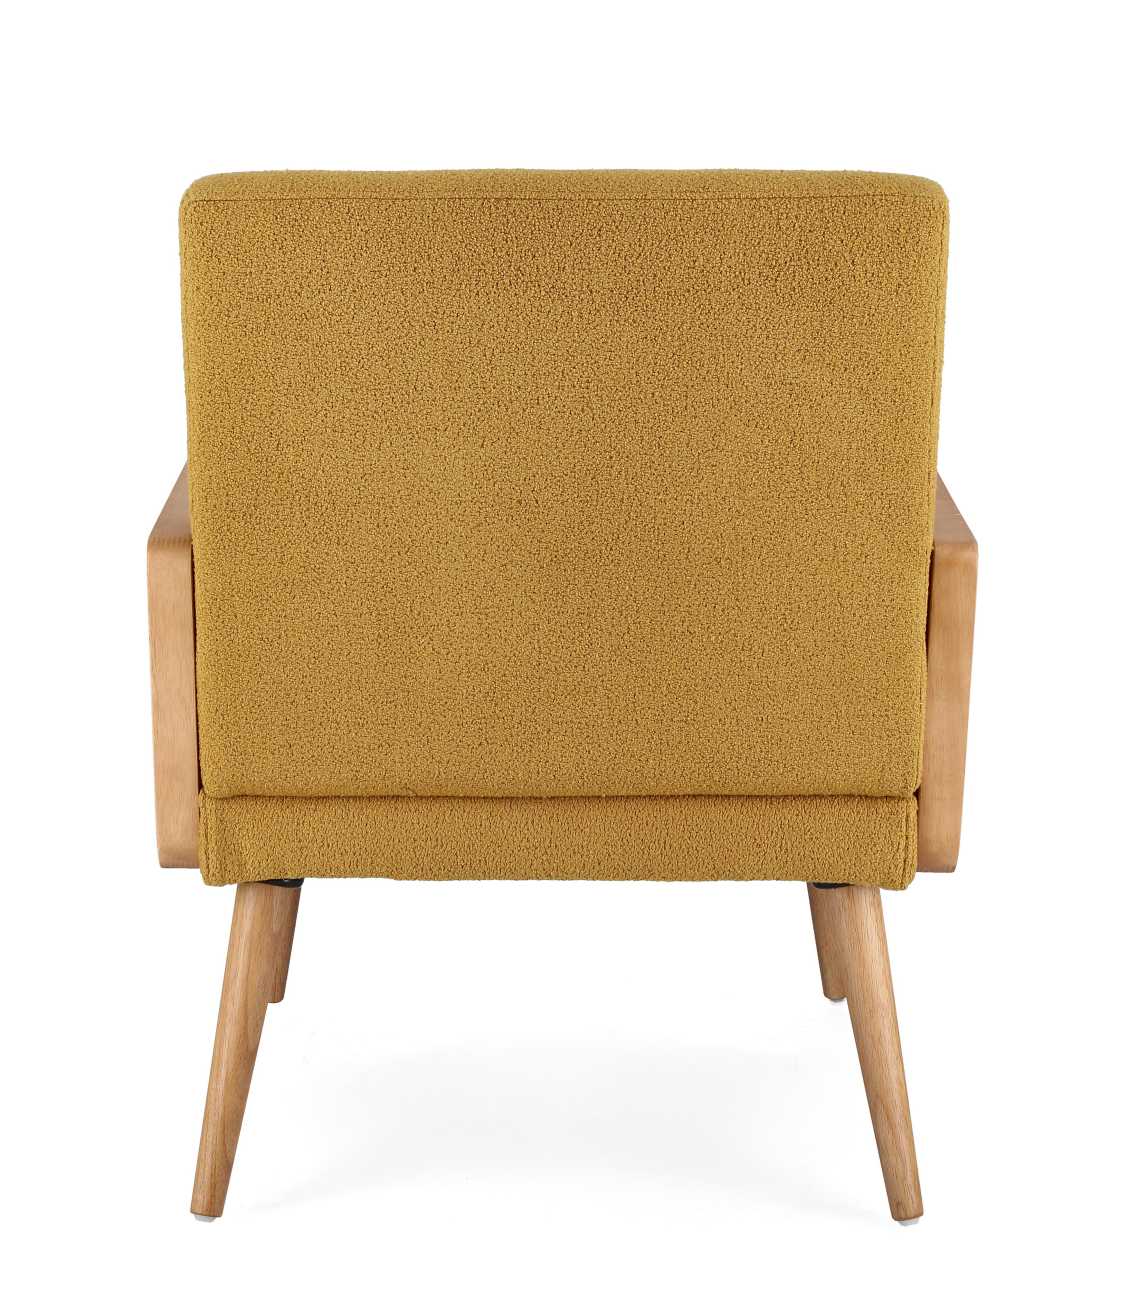 Der Sessel Verina überzeugt mit seinem modernen Stil. Gefertigt wurde er aus einem Stoff-Bezug, welcher einen Senf Farbton besitzt. Das Gestell ist aus Kautschukholz und hat eine natürliche Farbe. Der Sessel verfügt über eine Armlehne.